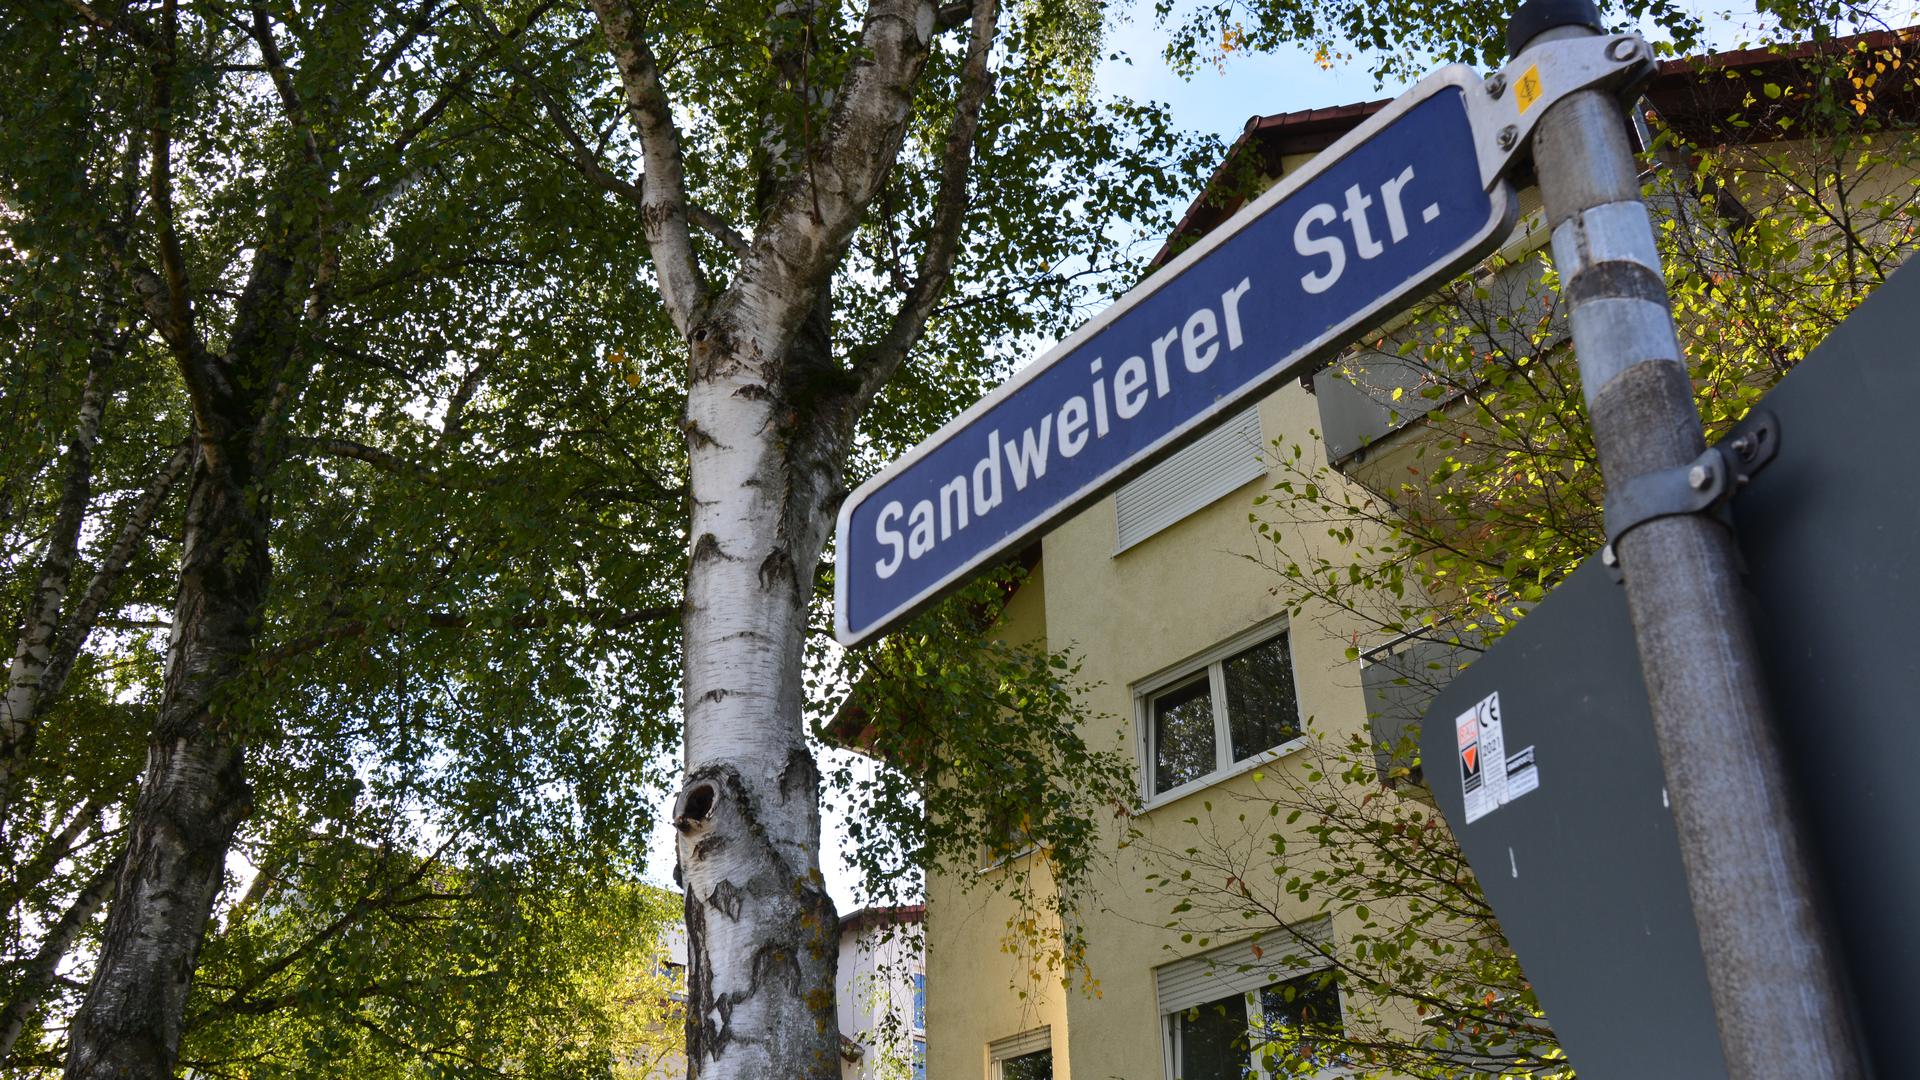 Im Ortschaftsrat Sandweier wird über die Umgestaltung der Sandweierer Straße diskutiert.